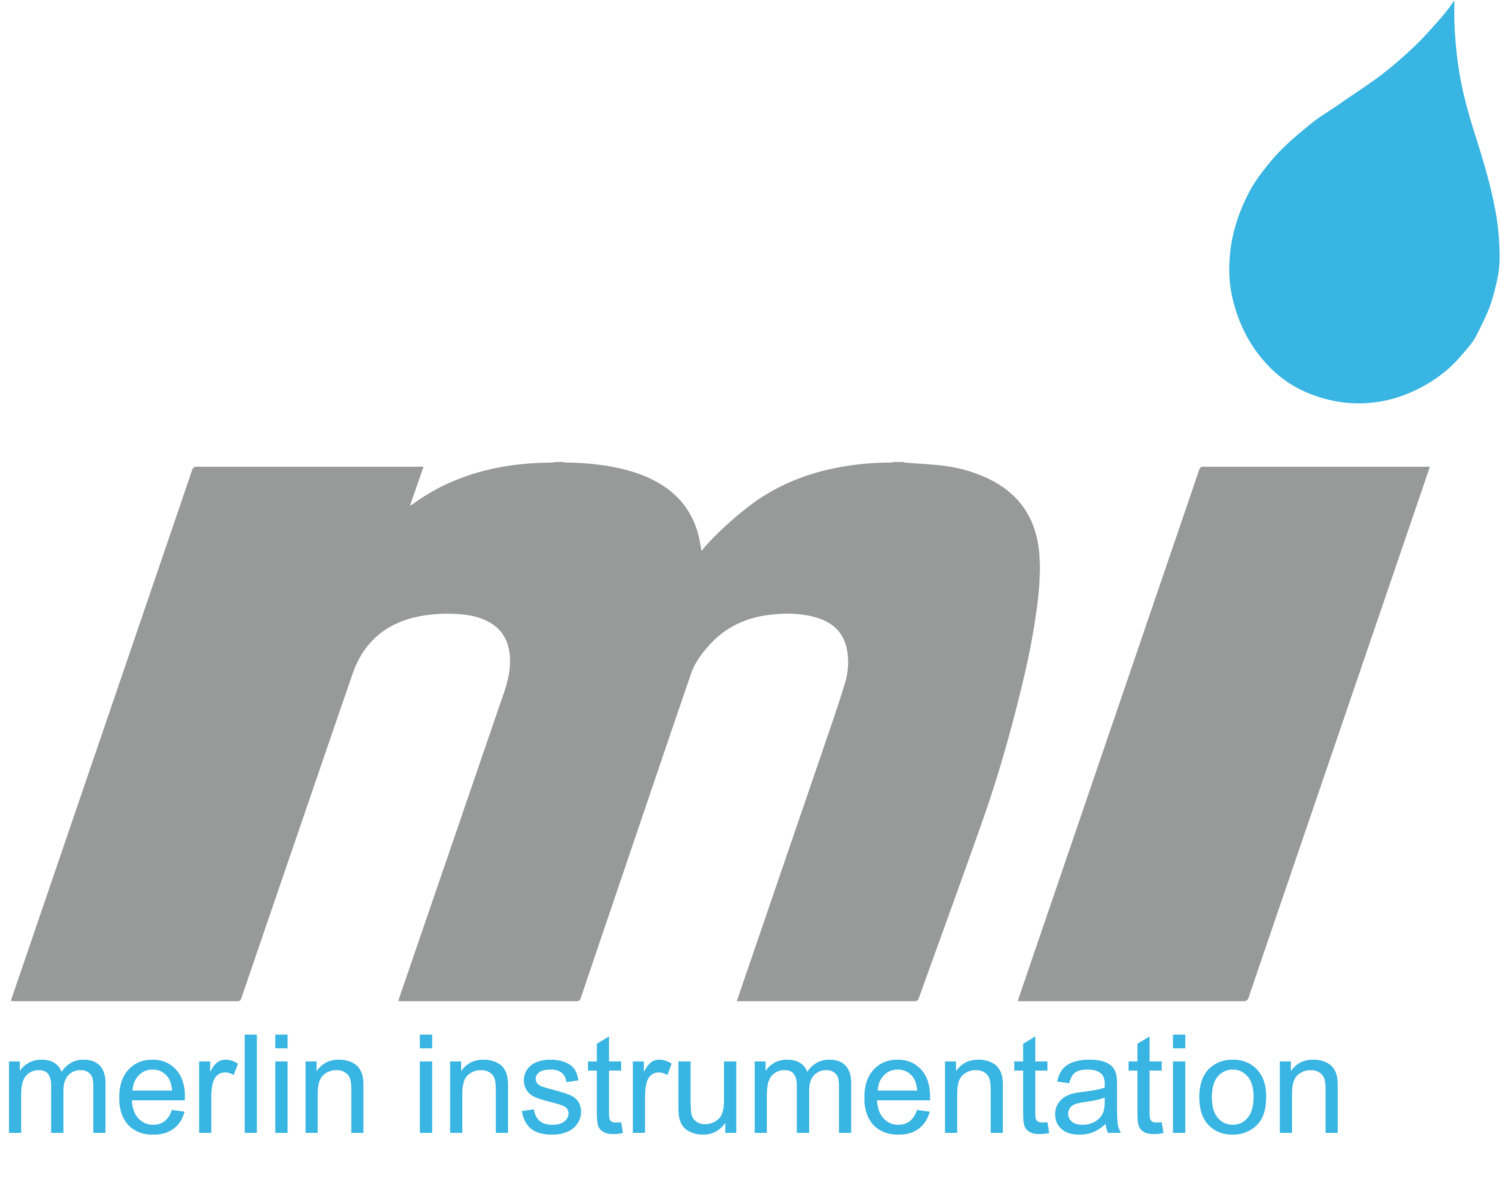 Merlin Instrumentation